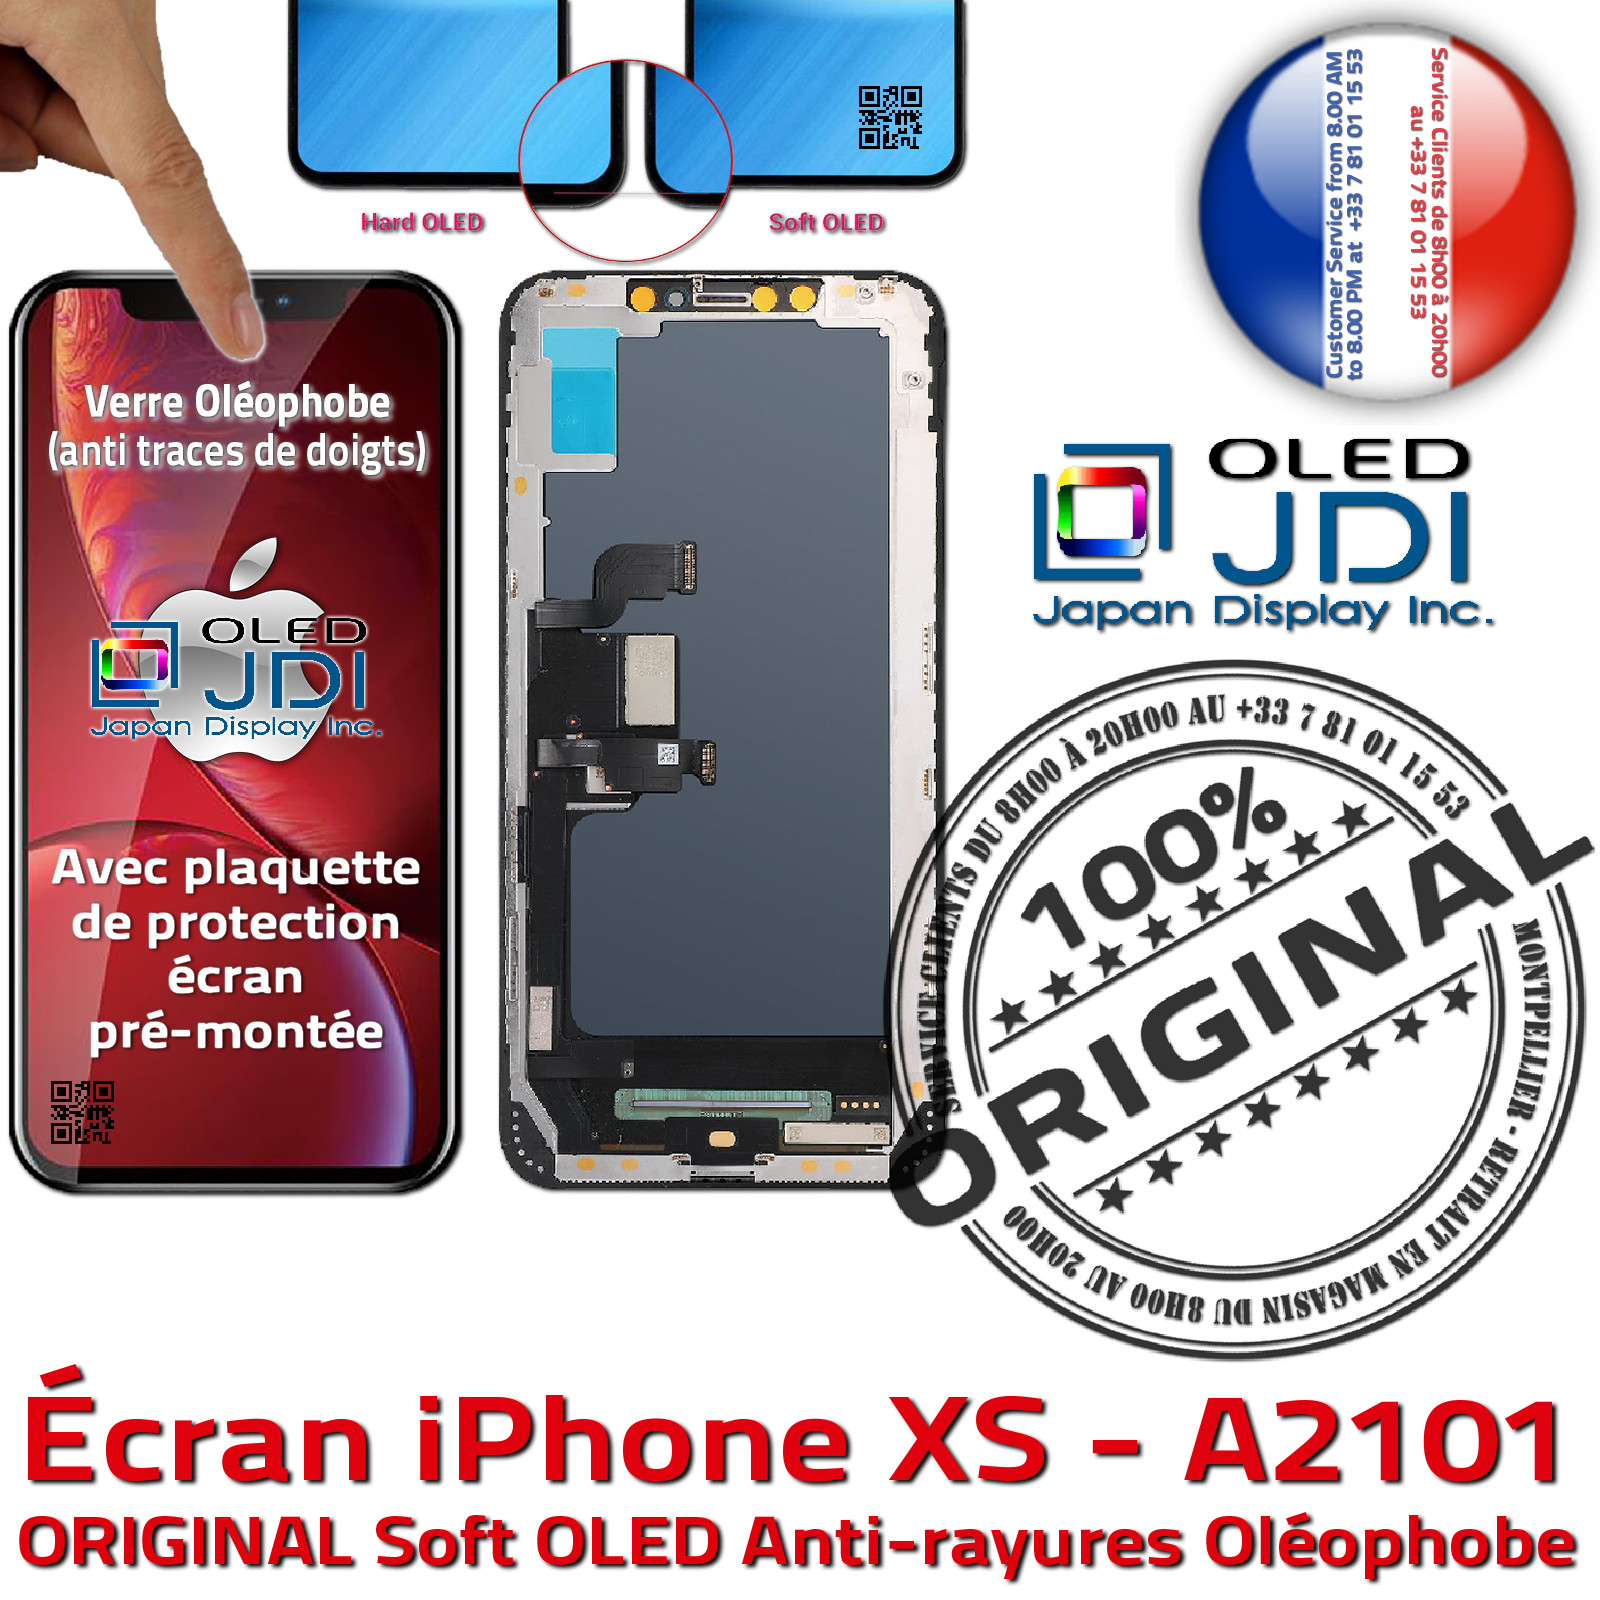 Ecran iPhone XS Max